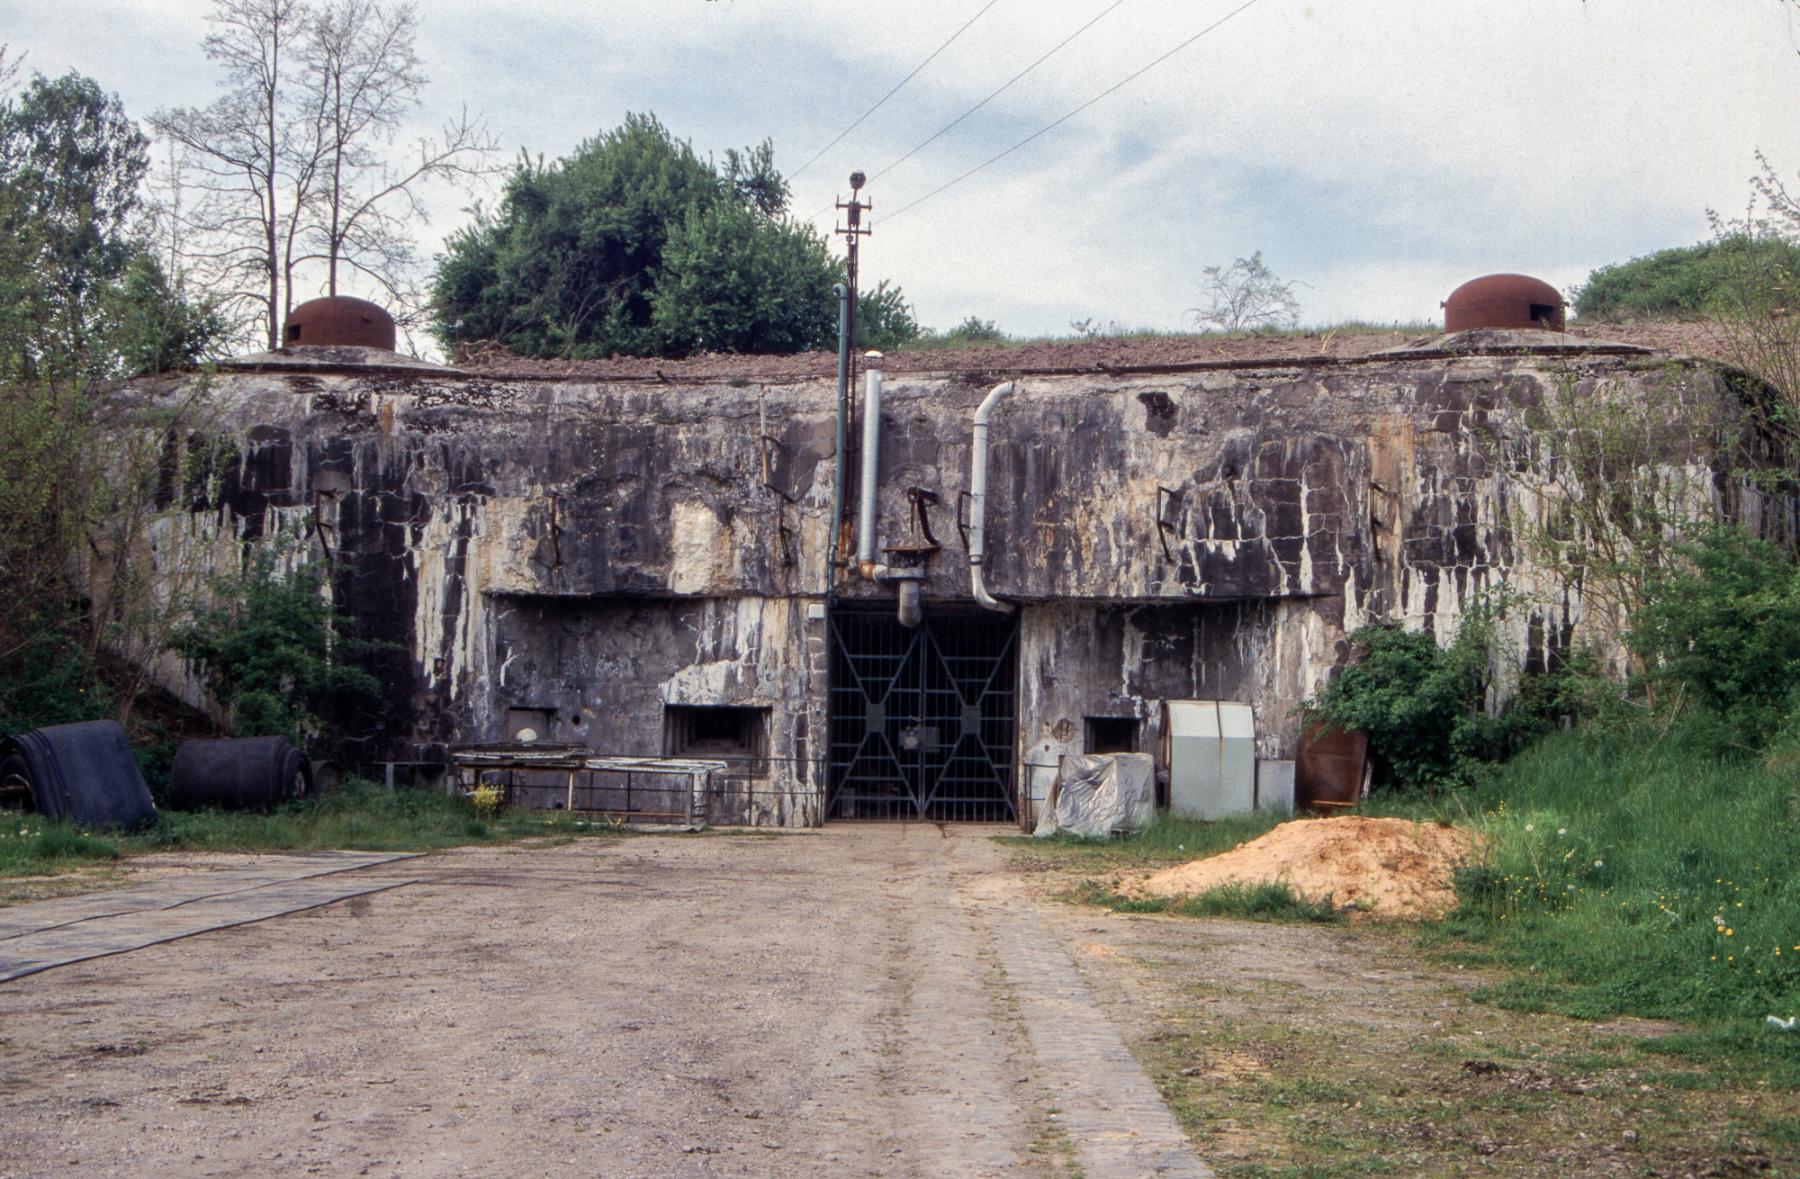 Ligne Maginot - ANZELING - A25 - (Ouvrage d'artillerie) - Entrée des Munitions
2002